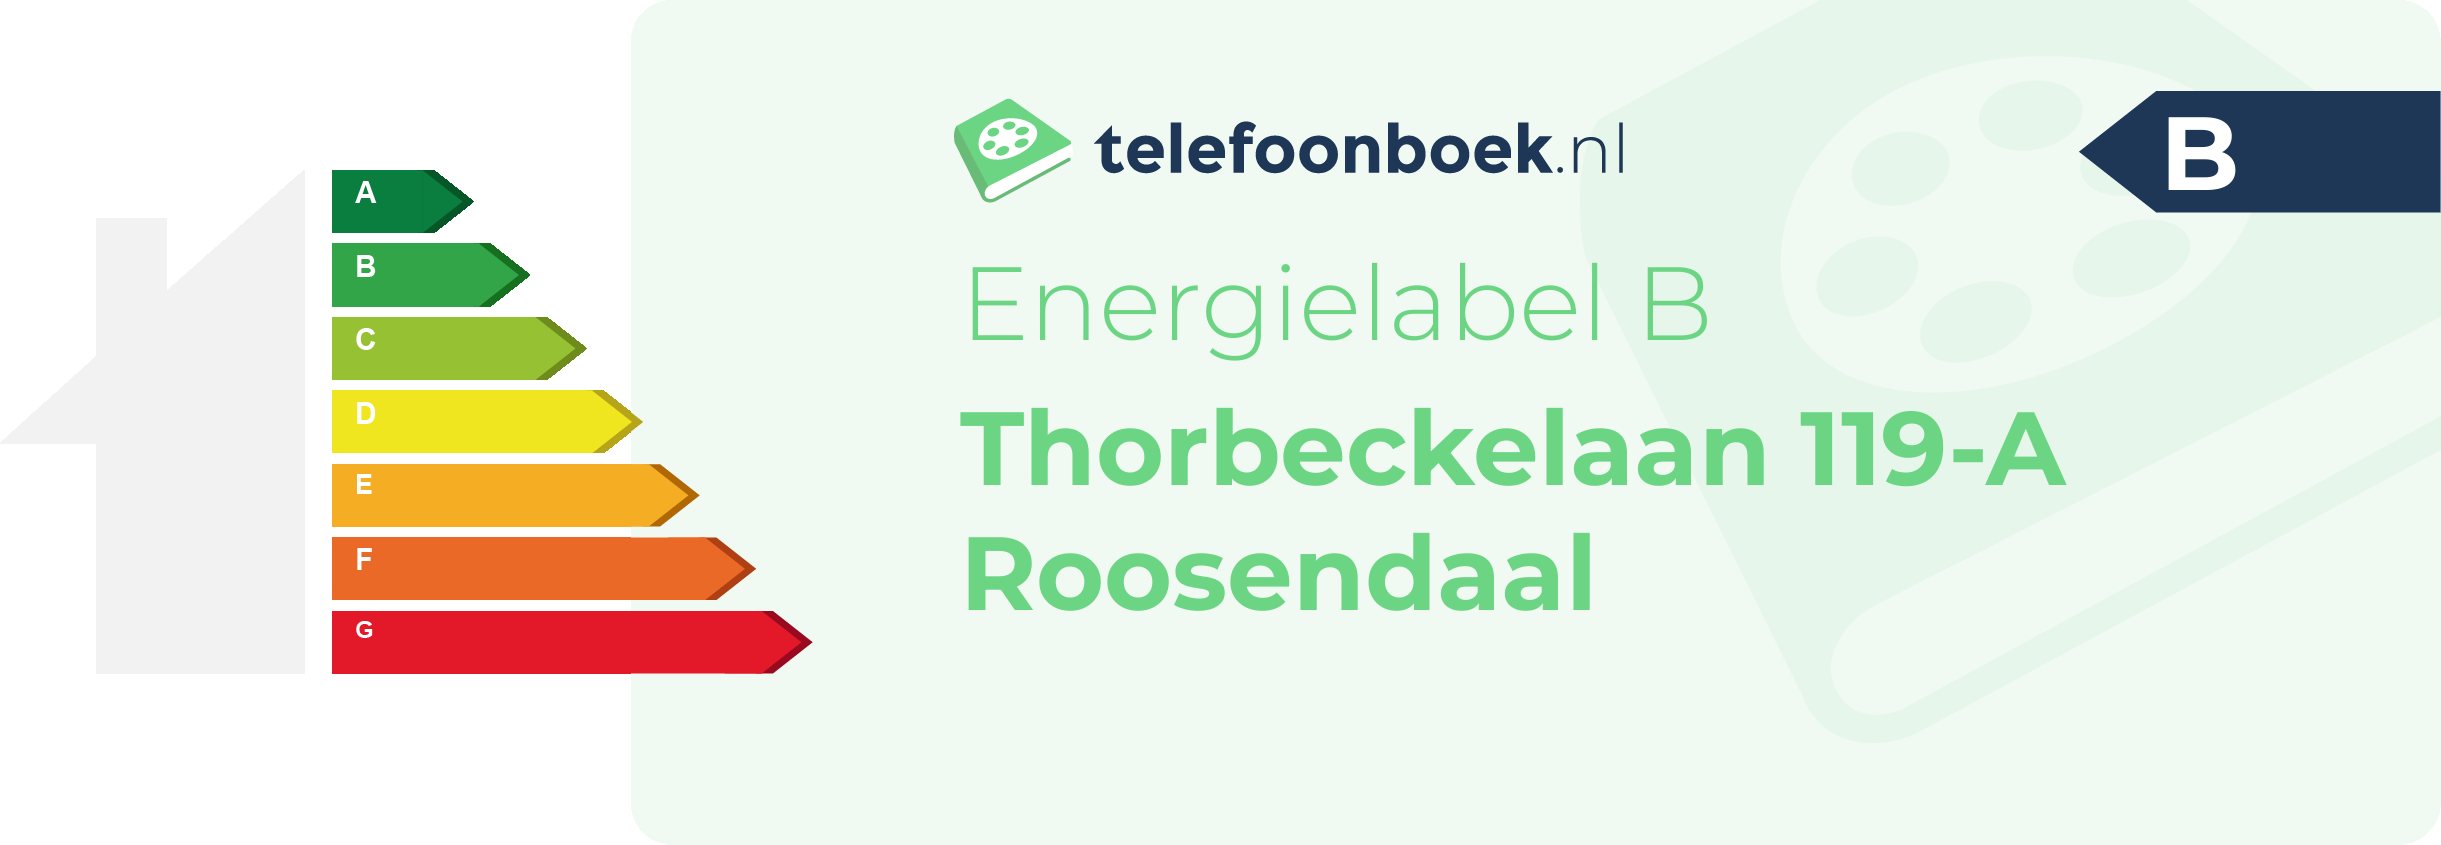 Energielabel Thorbeckelaan 119-A Roosendaal